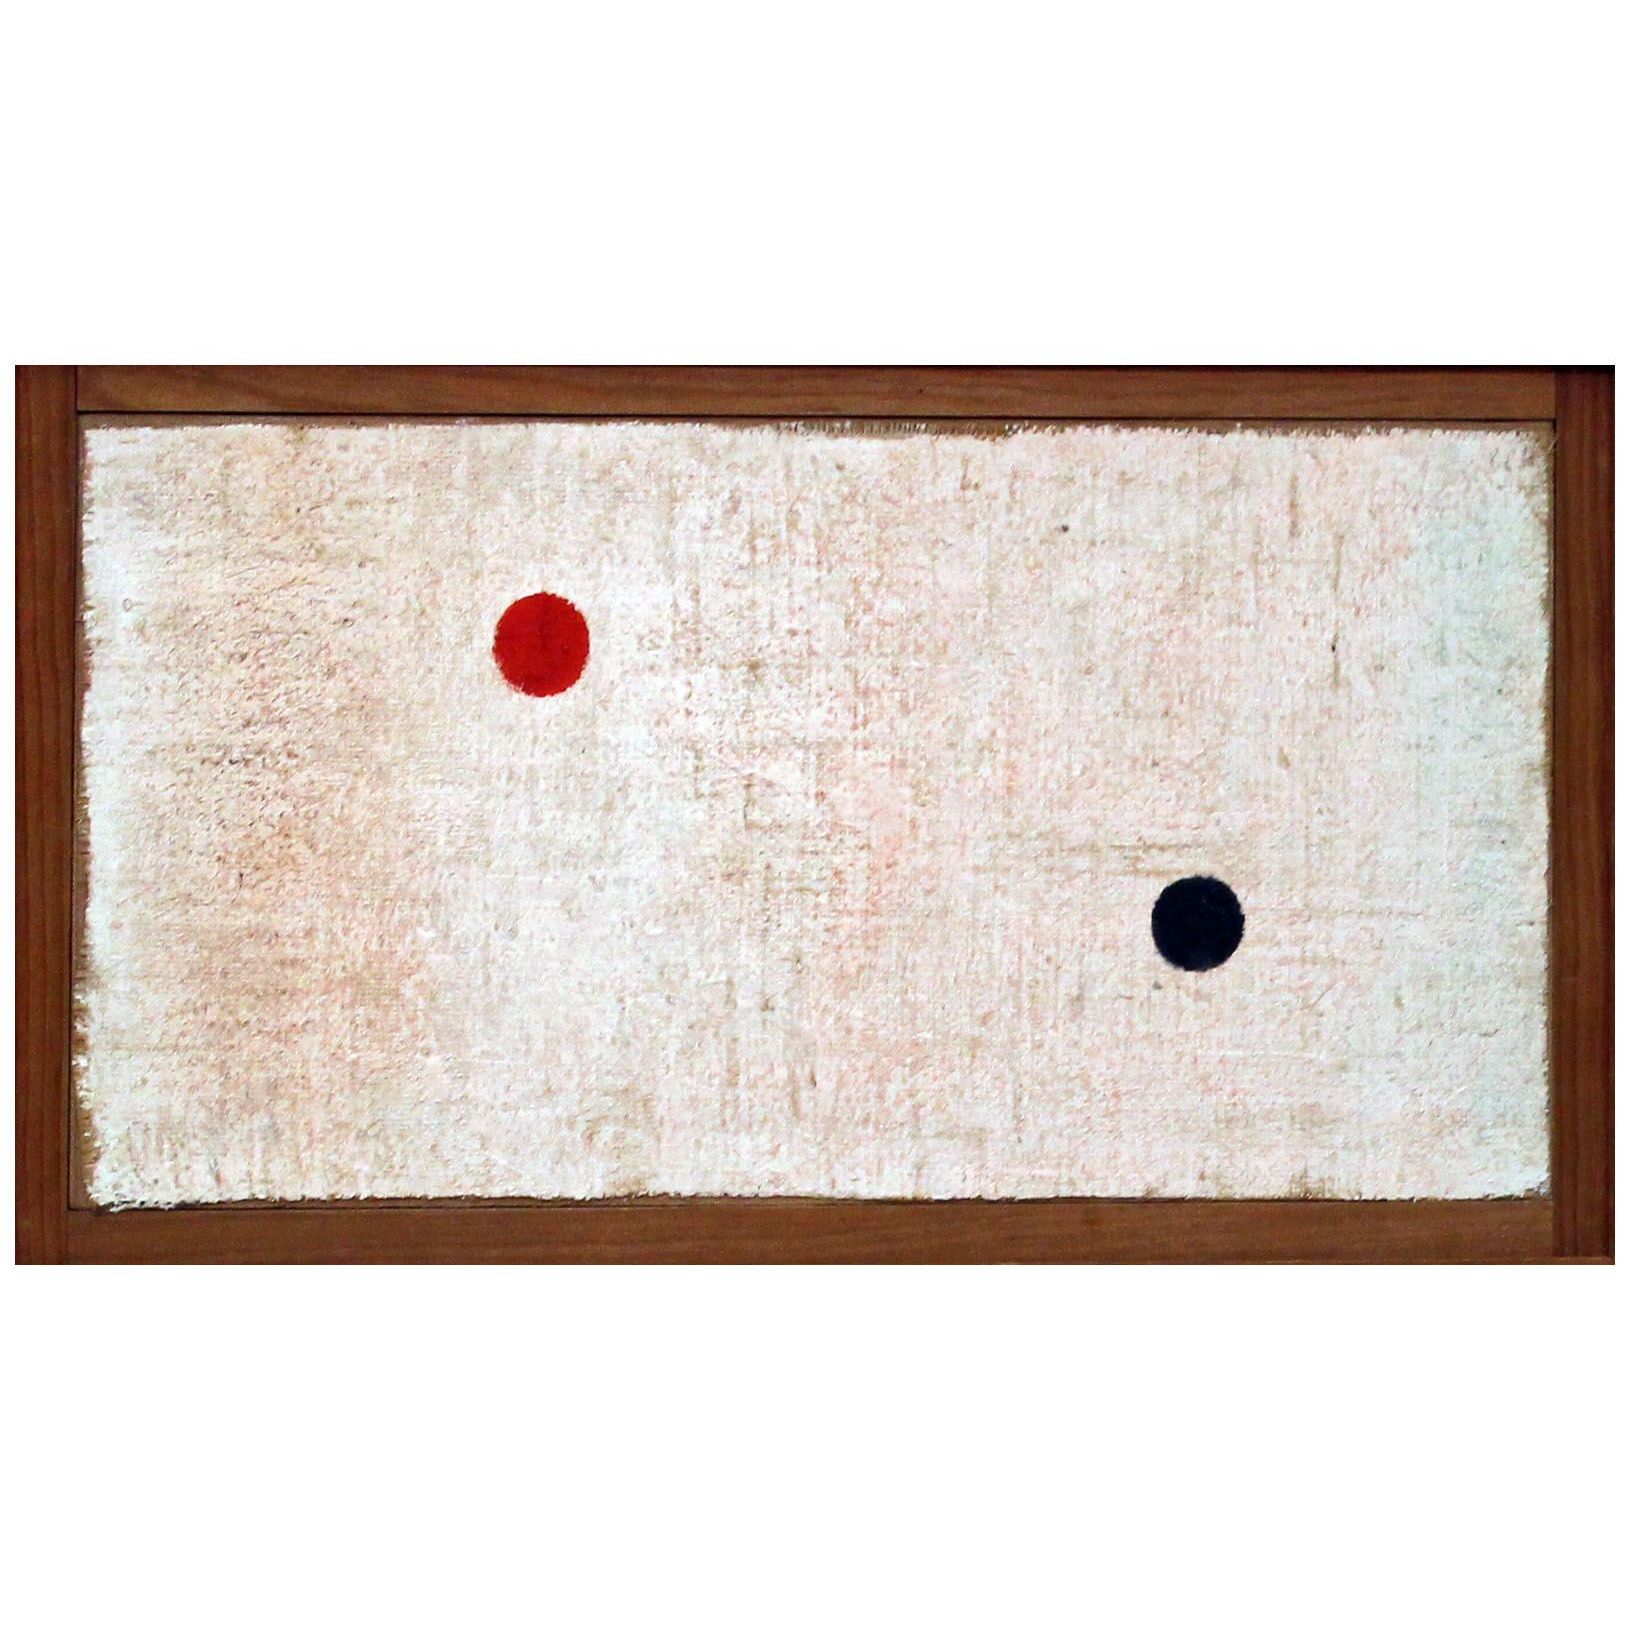 Paul Klee. Le rouge et le noir. 1938. Von der Heydt Museum Wuppertal